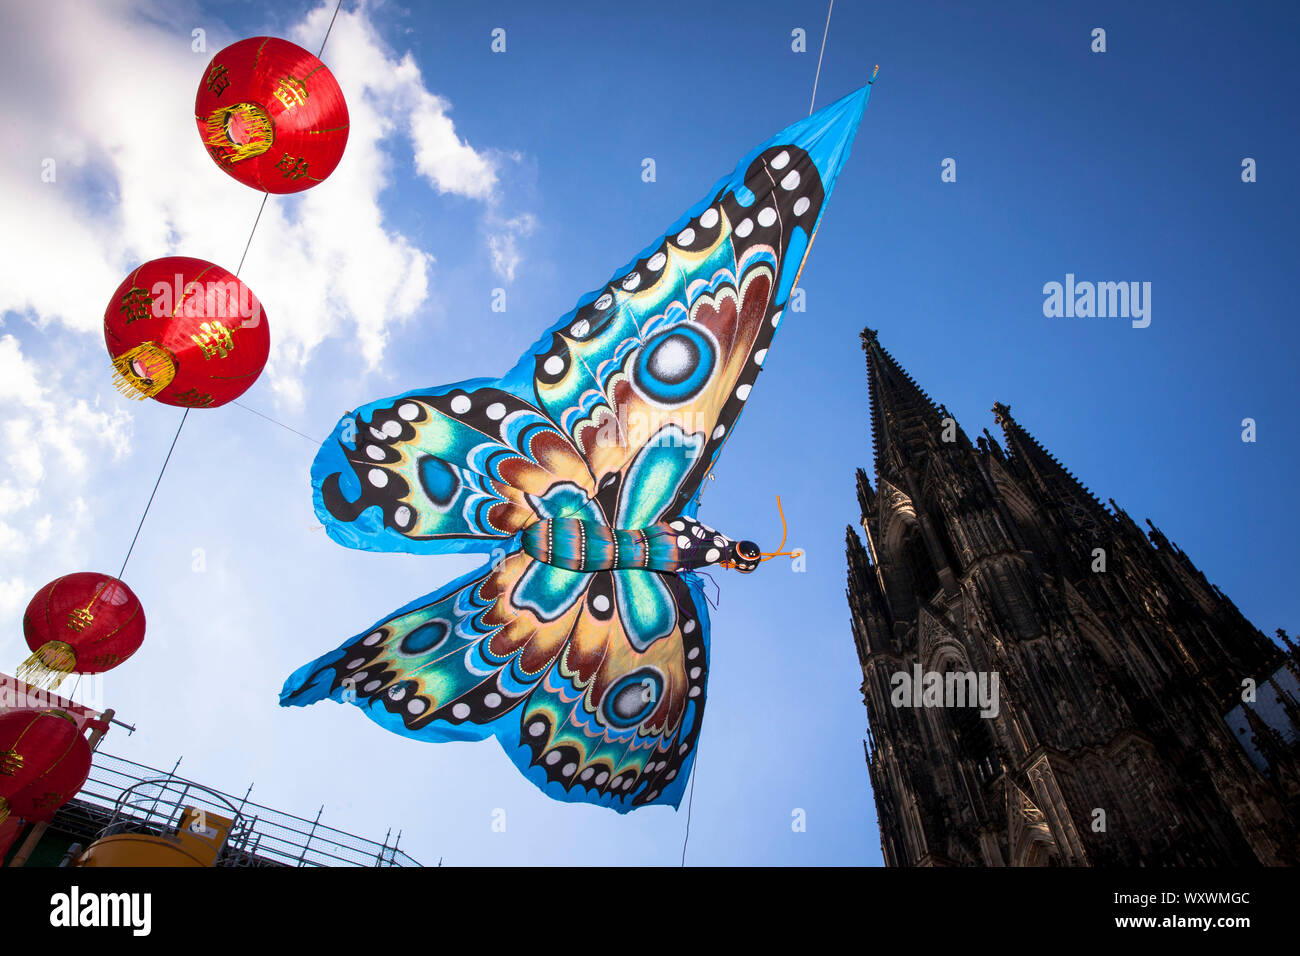 Festival de la Chine sur la place Roncalli à la cathédrale, papillon de décoration, Cologne, Allemagne. Auf dem Chinafest Roncalliplatz am Dom, Schmetterling Banque D'Images